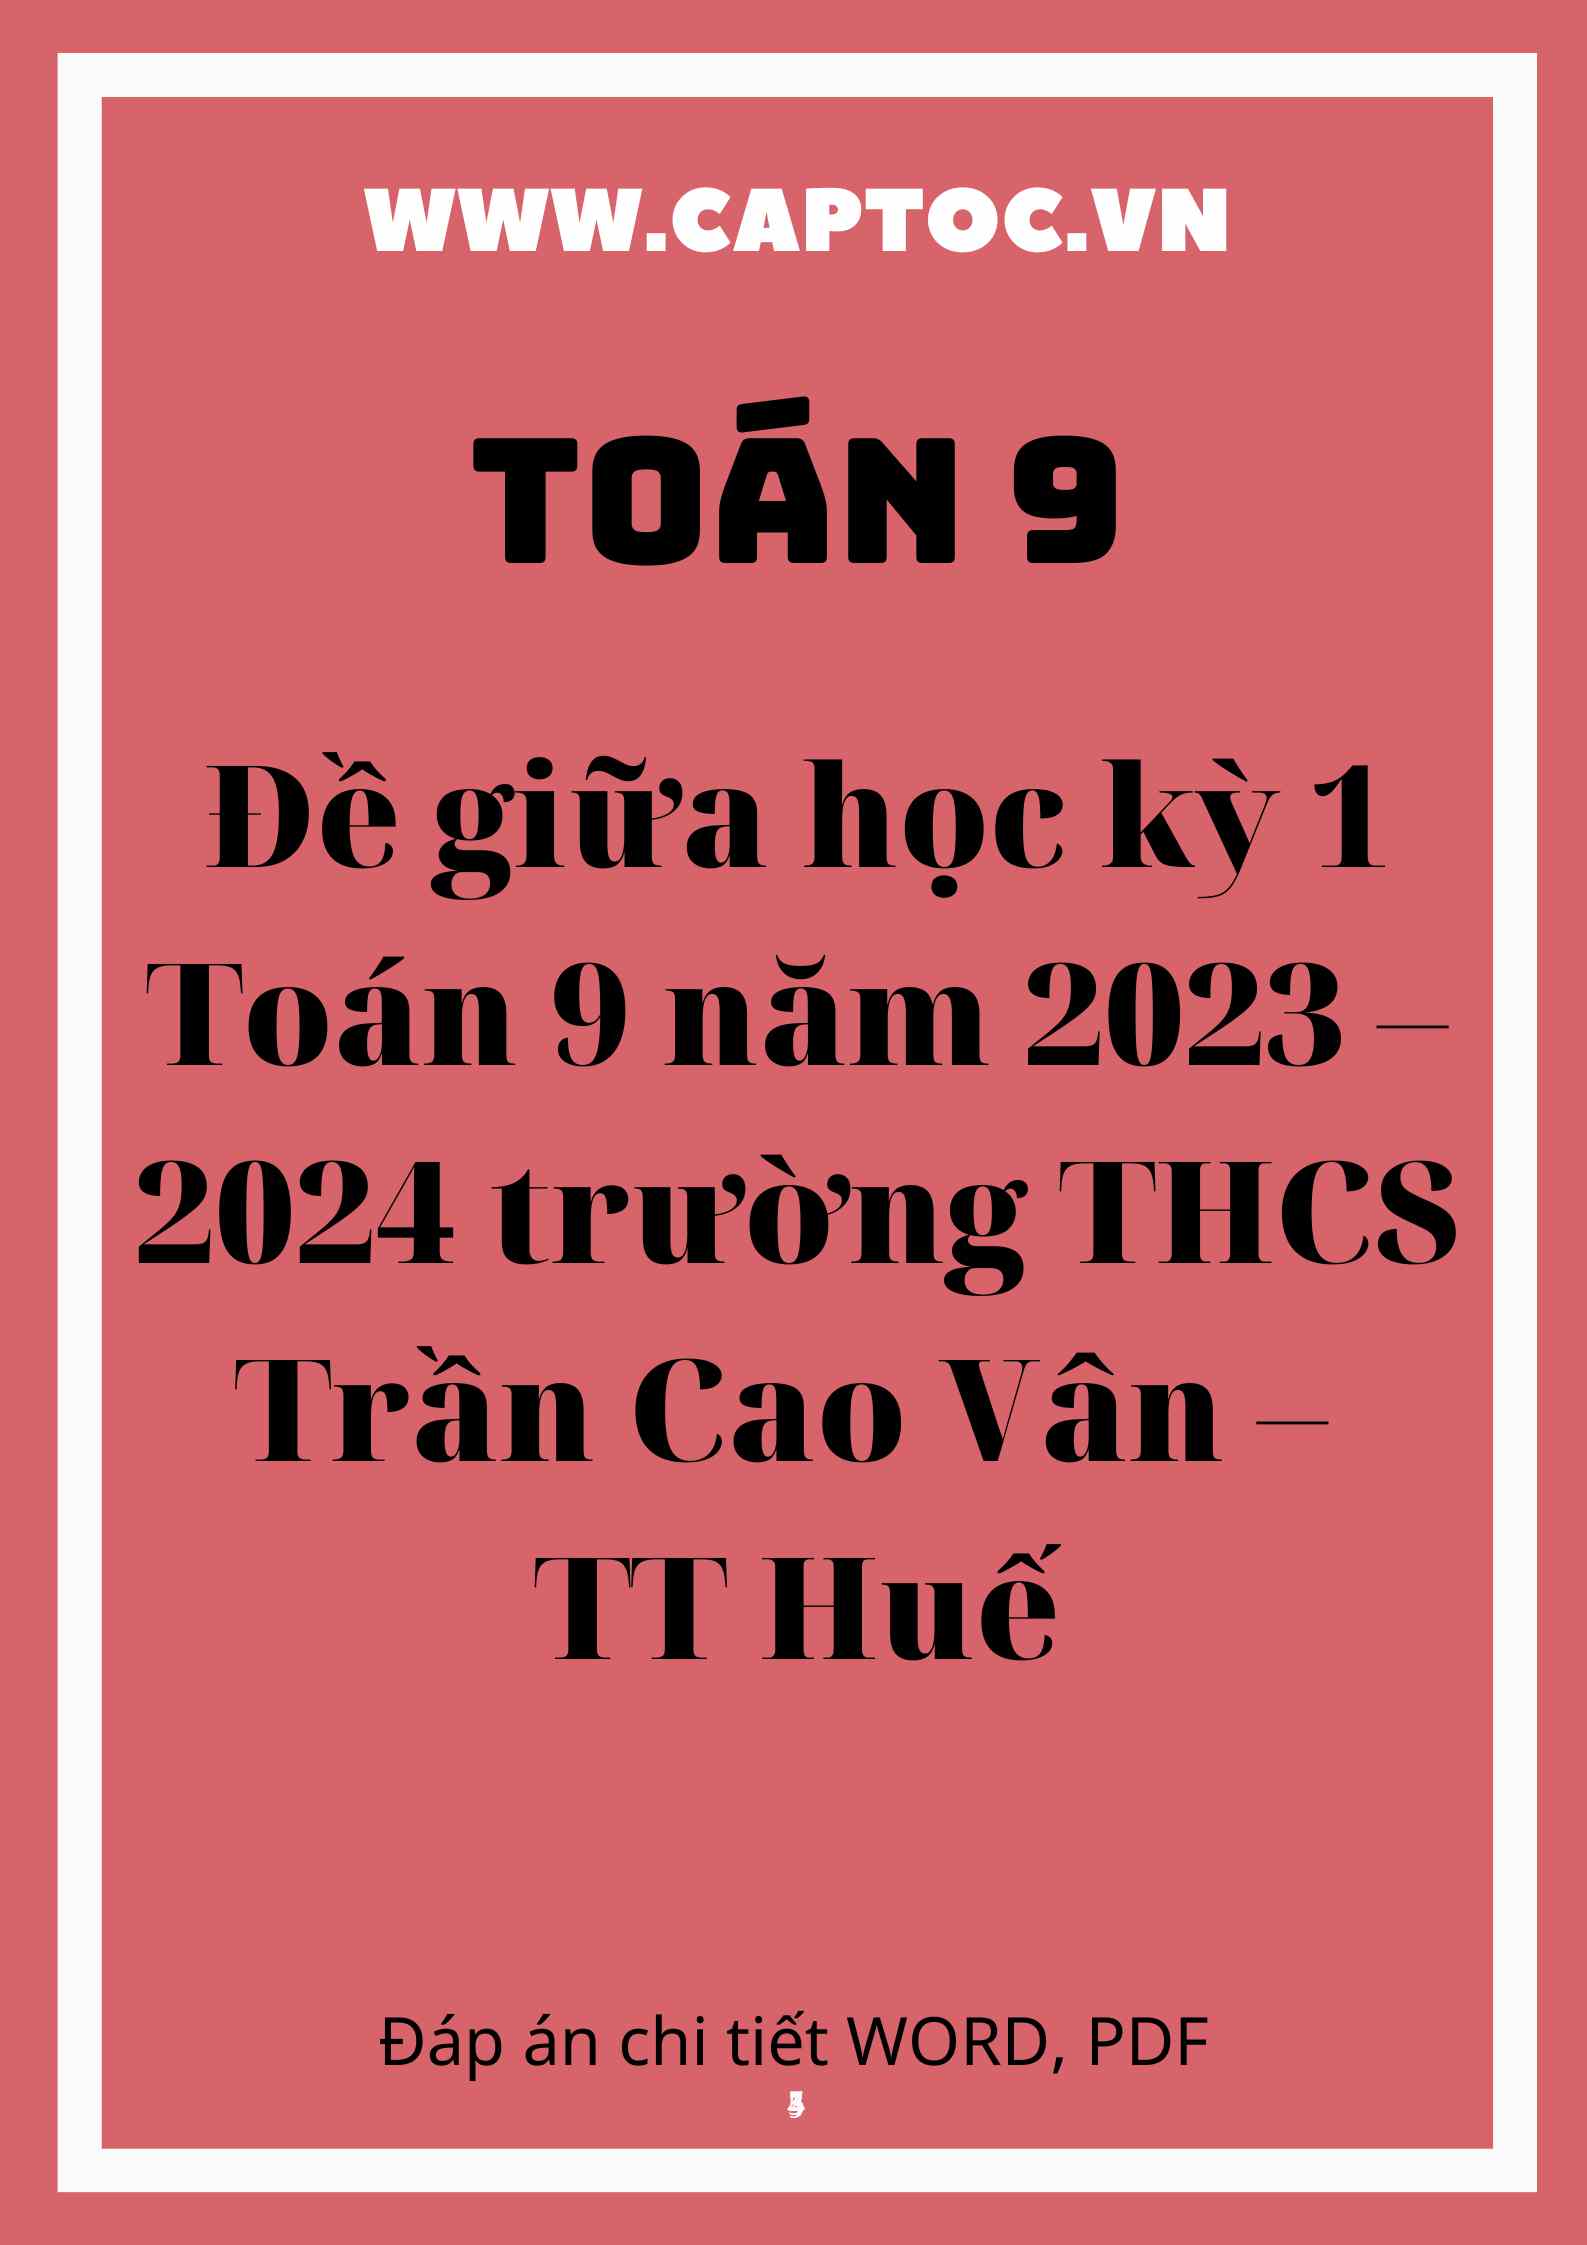 Đề giữa học kỳ 1 Toán 9 năm 2023 – 2024 trường THCS Trần Cao Vân – TT Huế